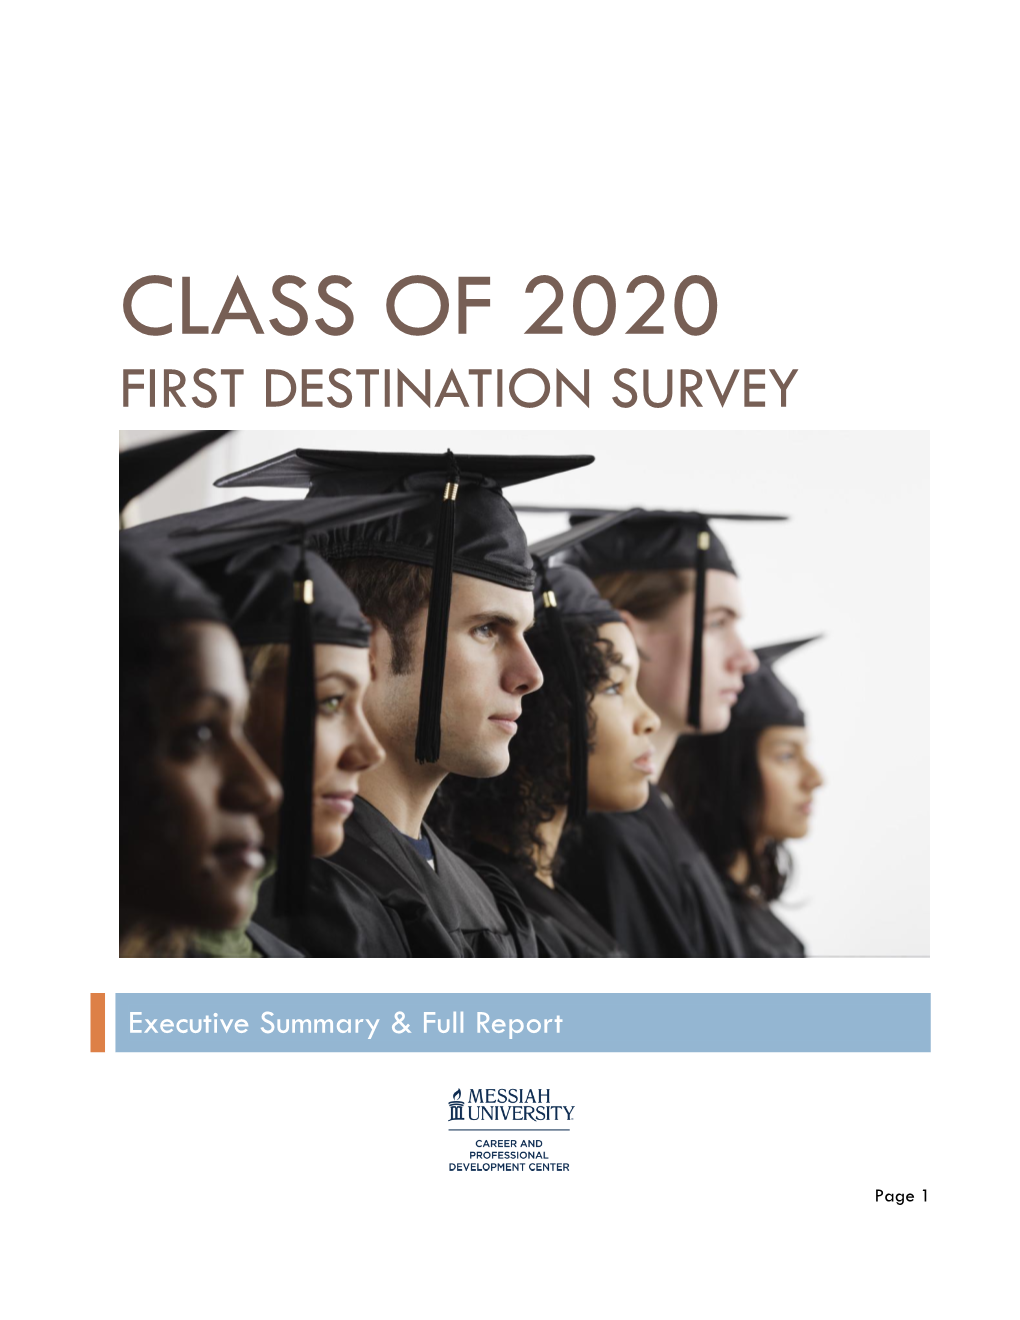 Class of 2020 First Destination Survey